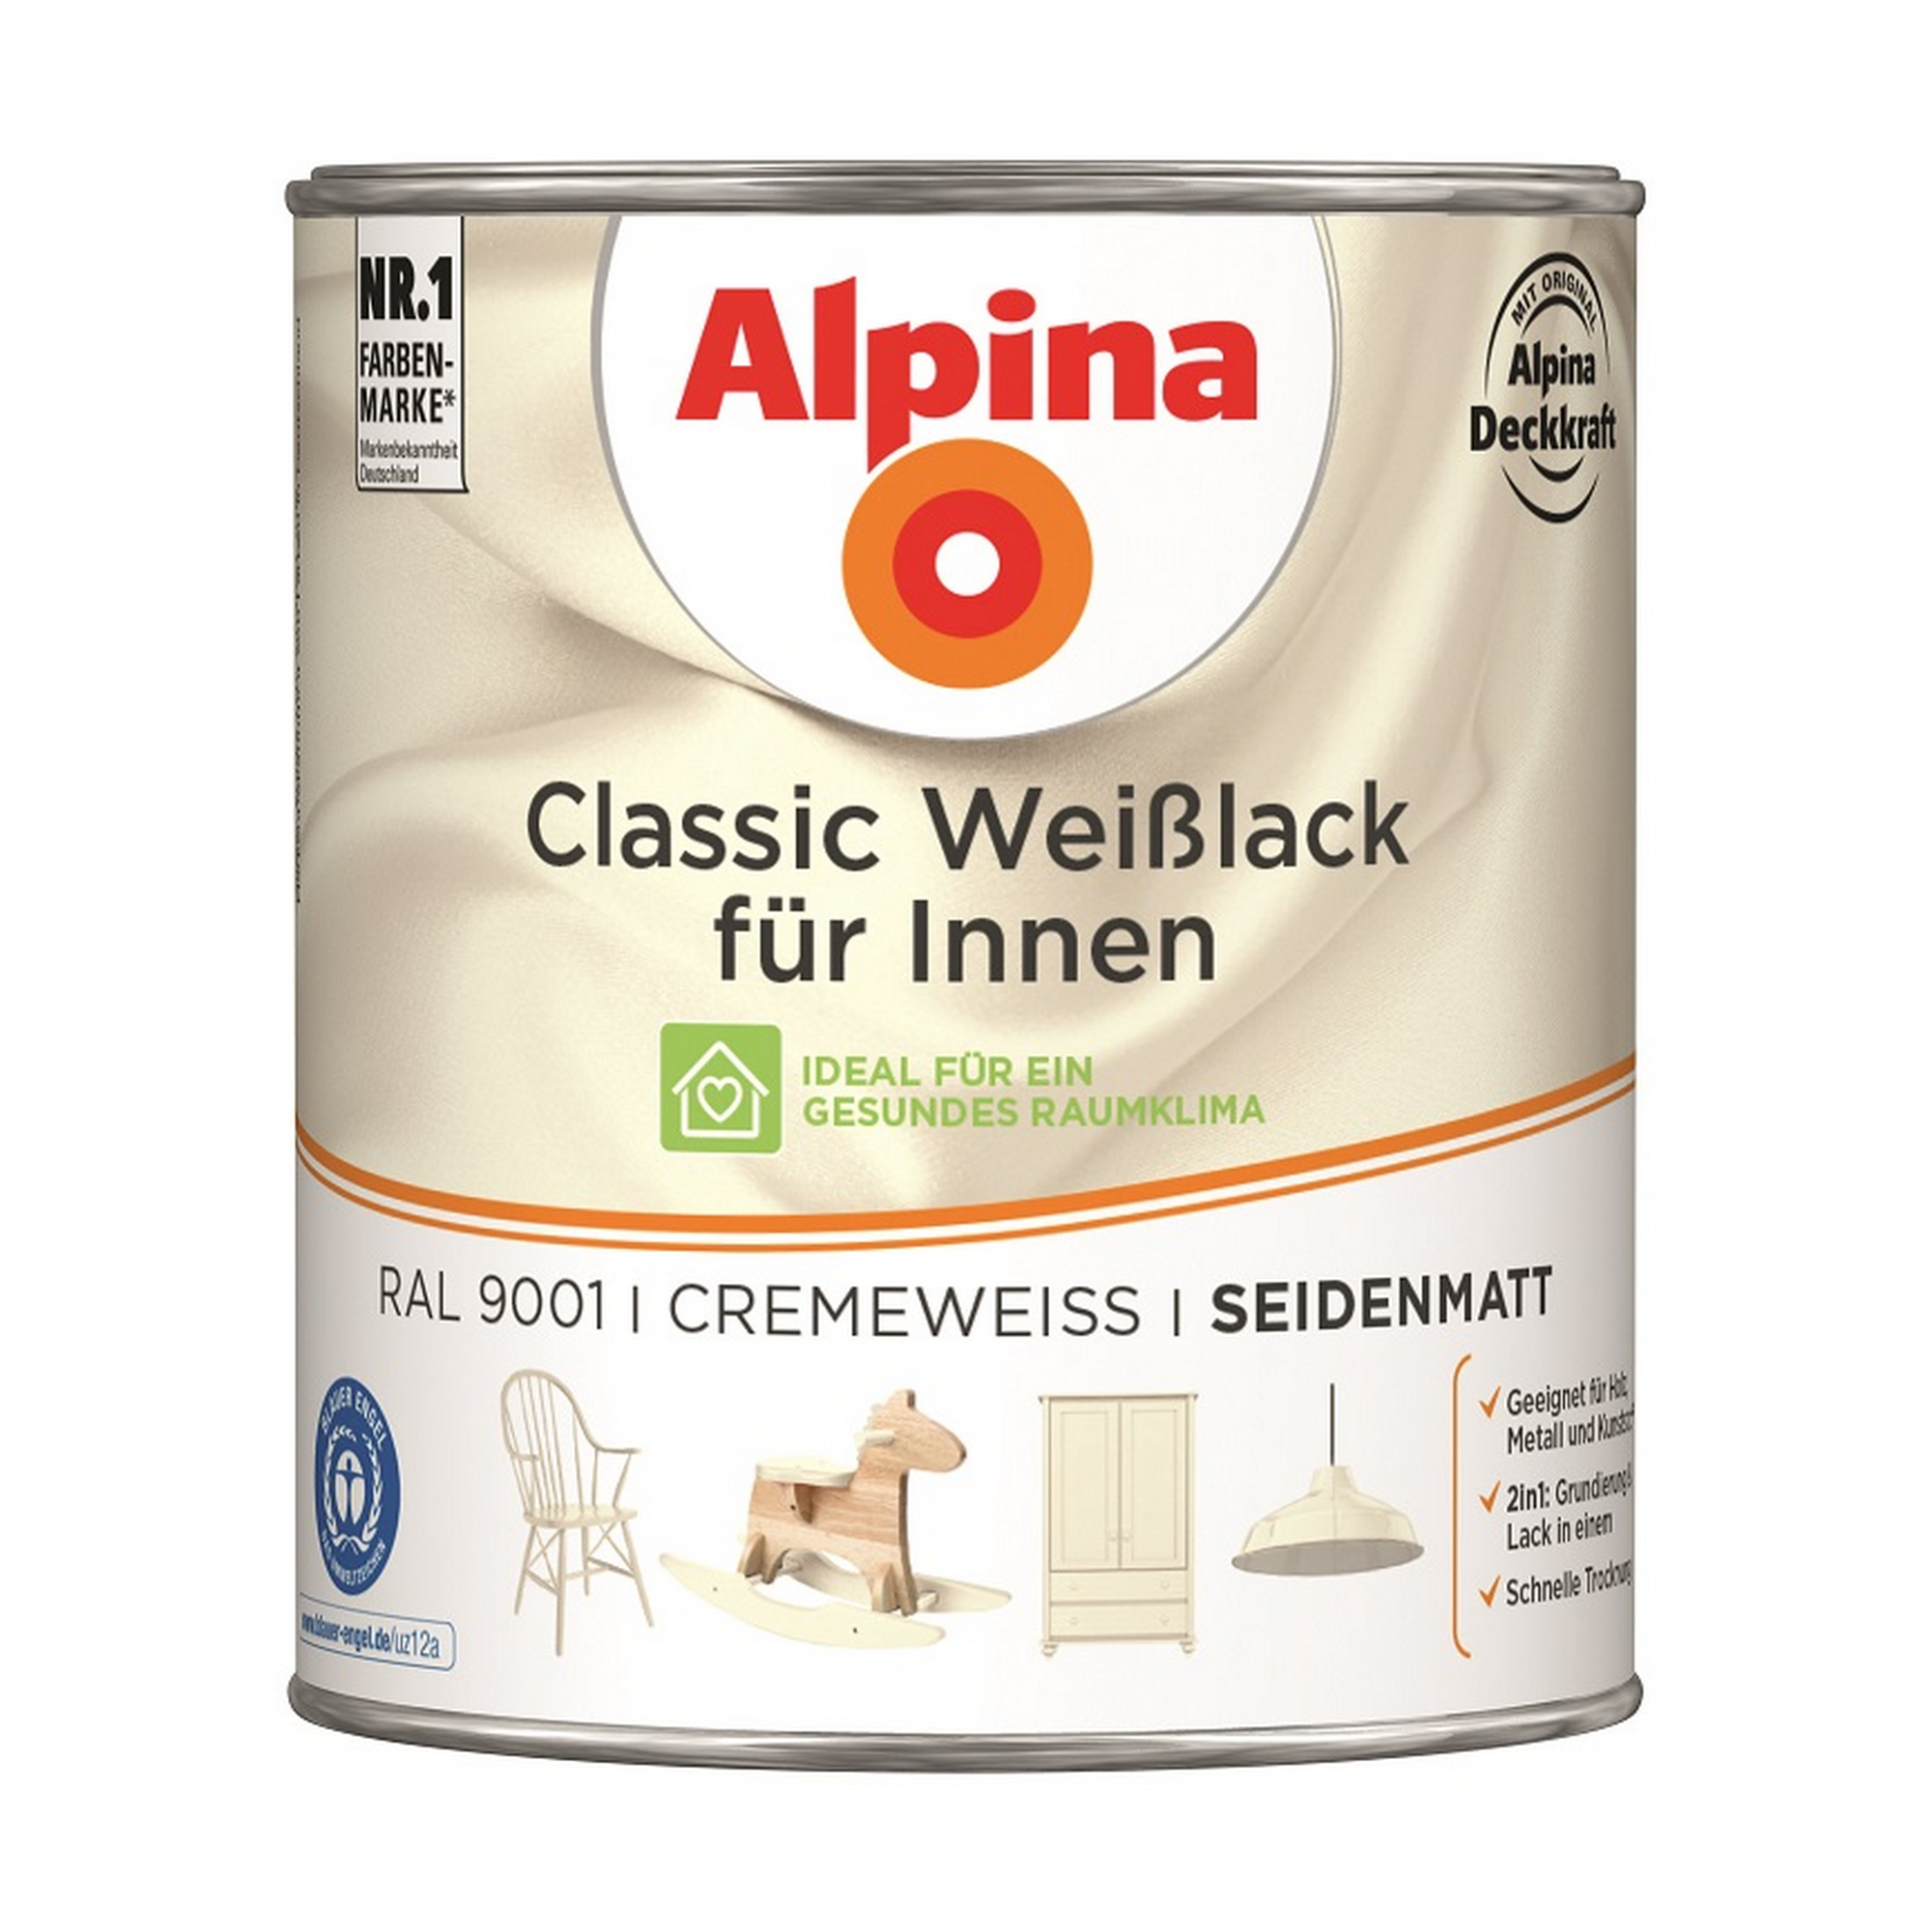 Weißlack für Innen cremeweiß seidenmatt 750 ml + product picture